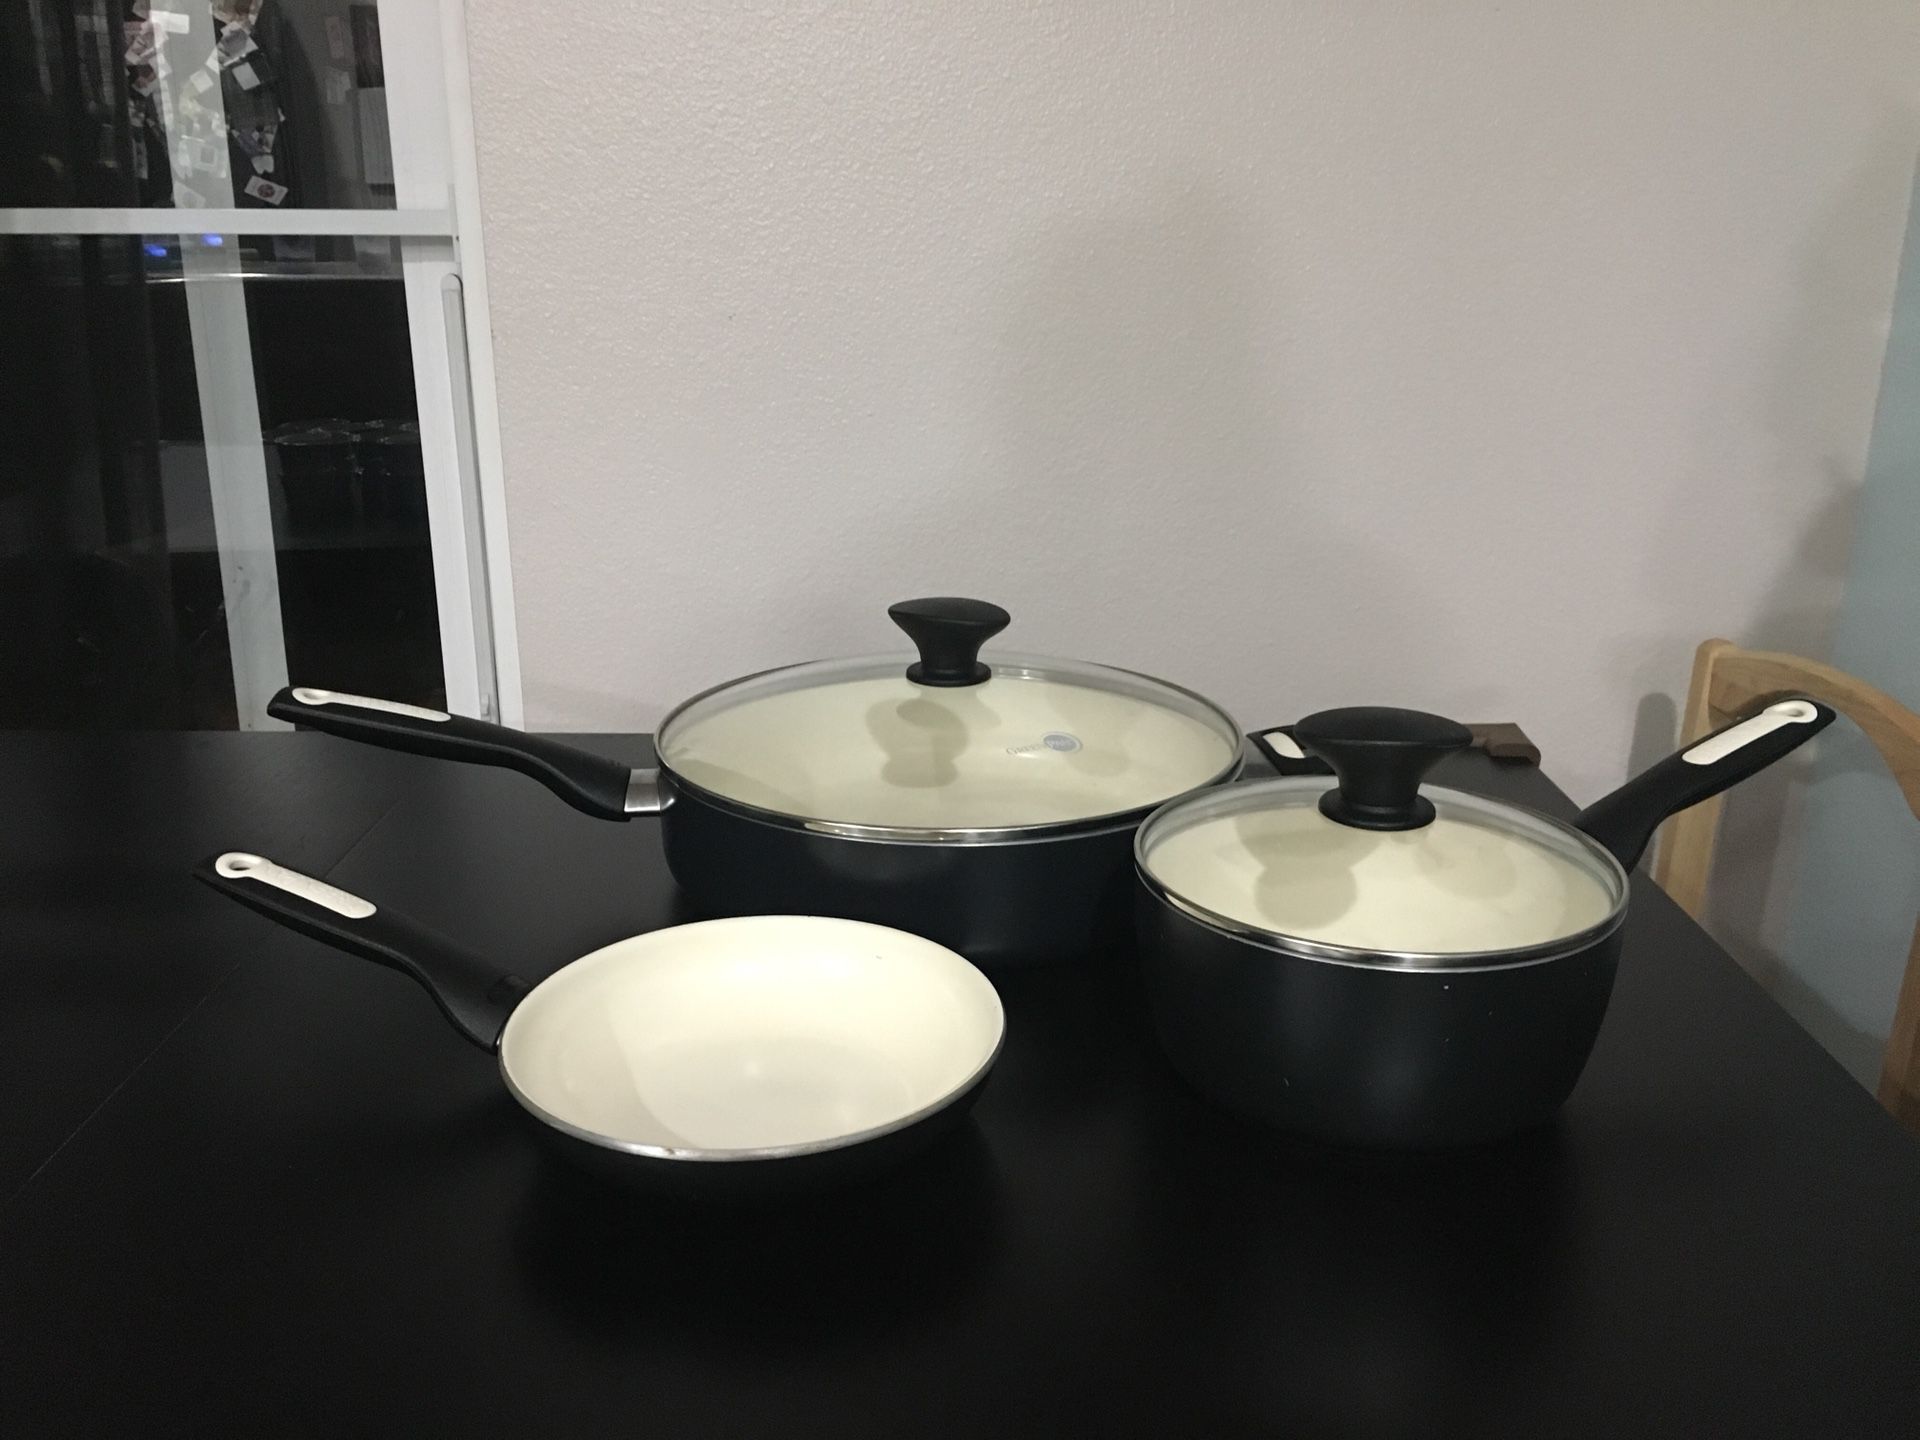 Green pan cookware